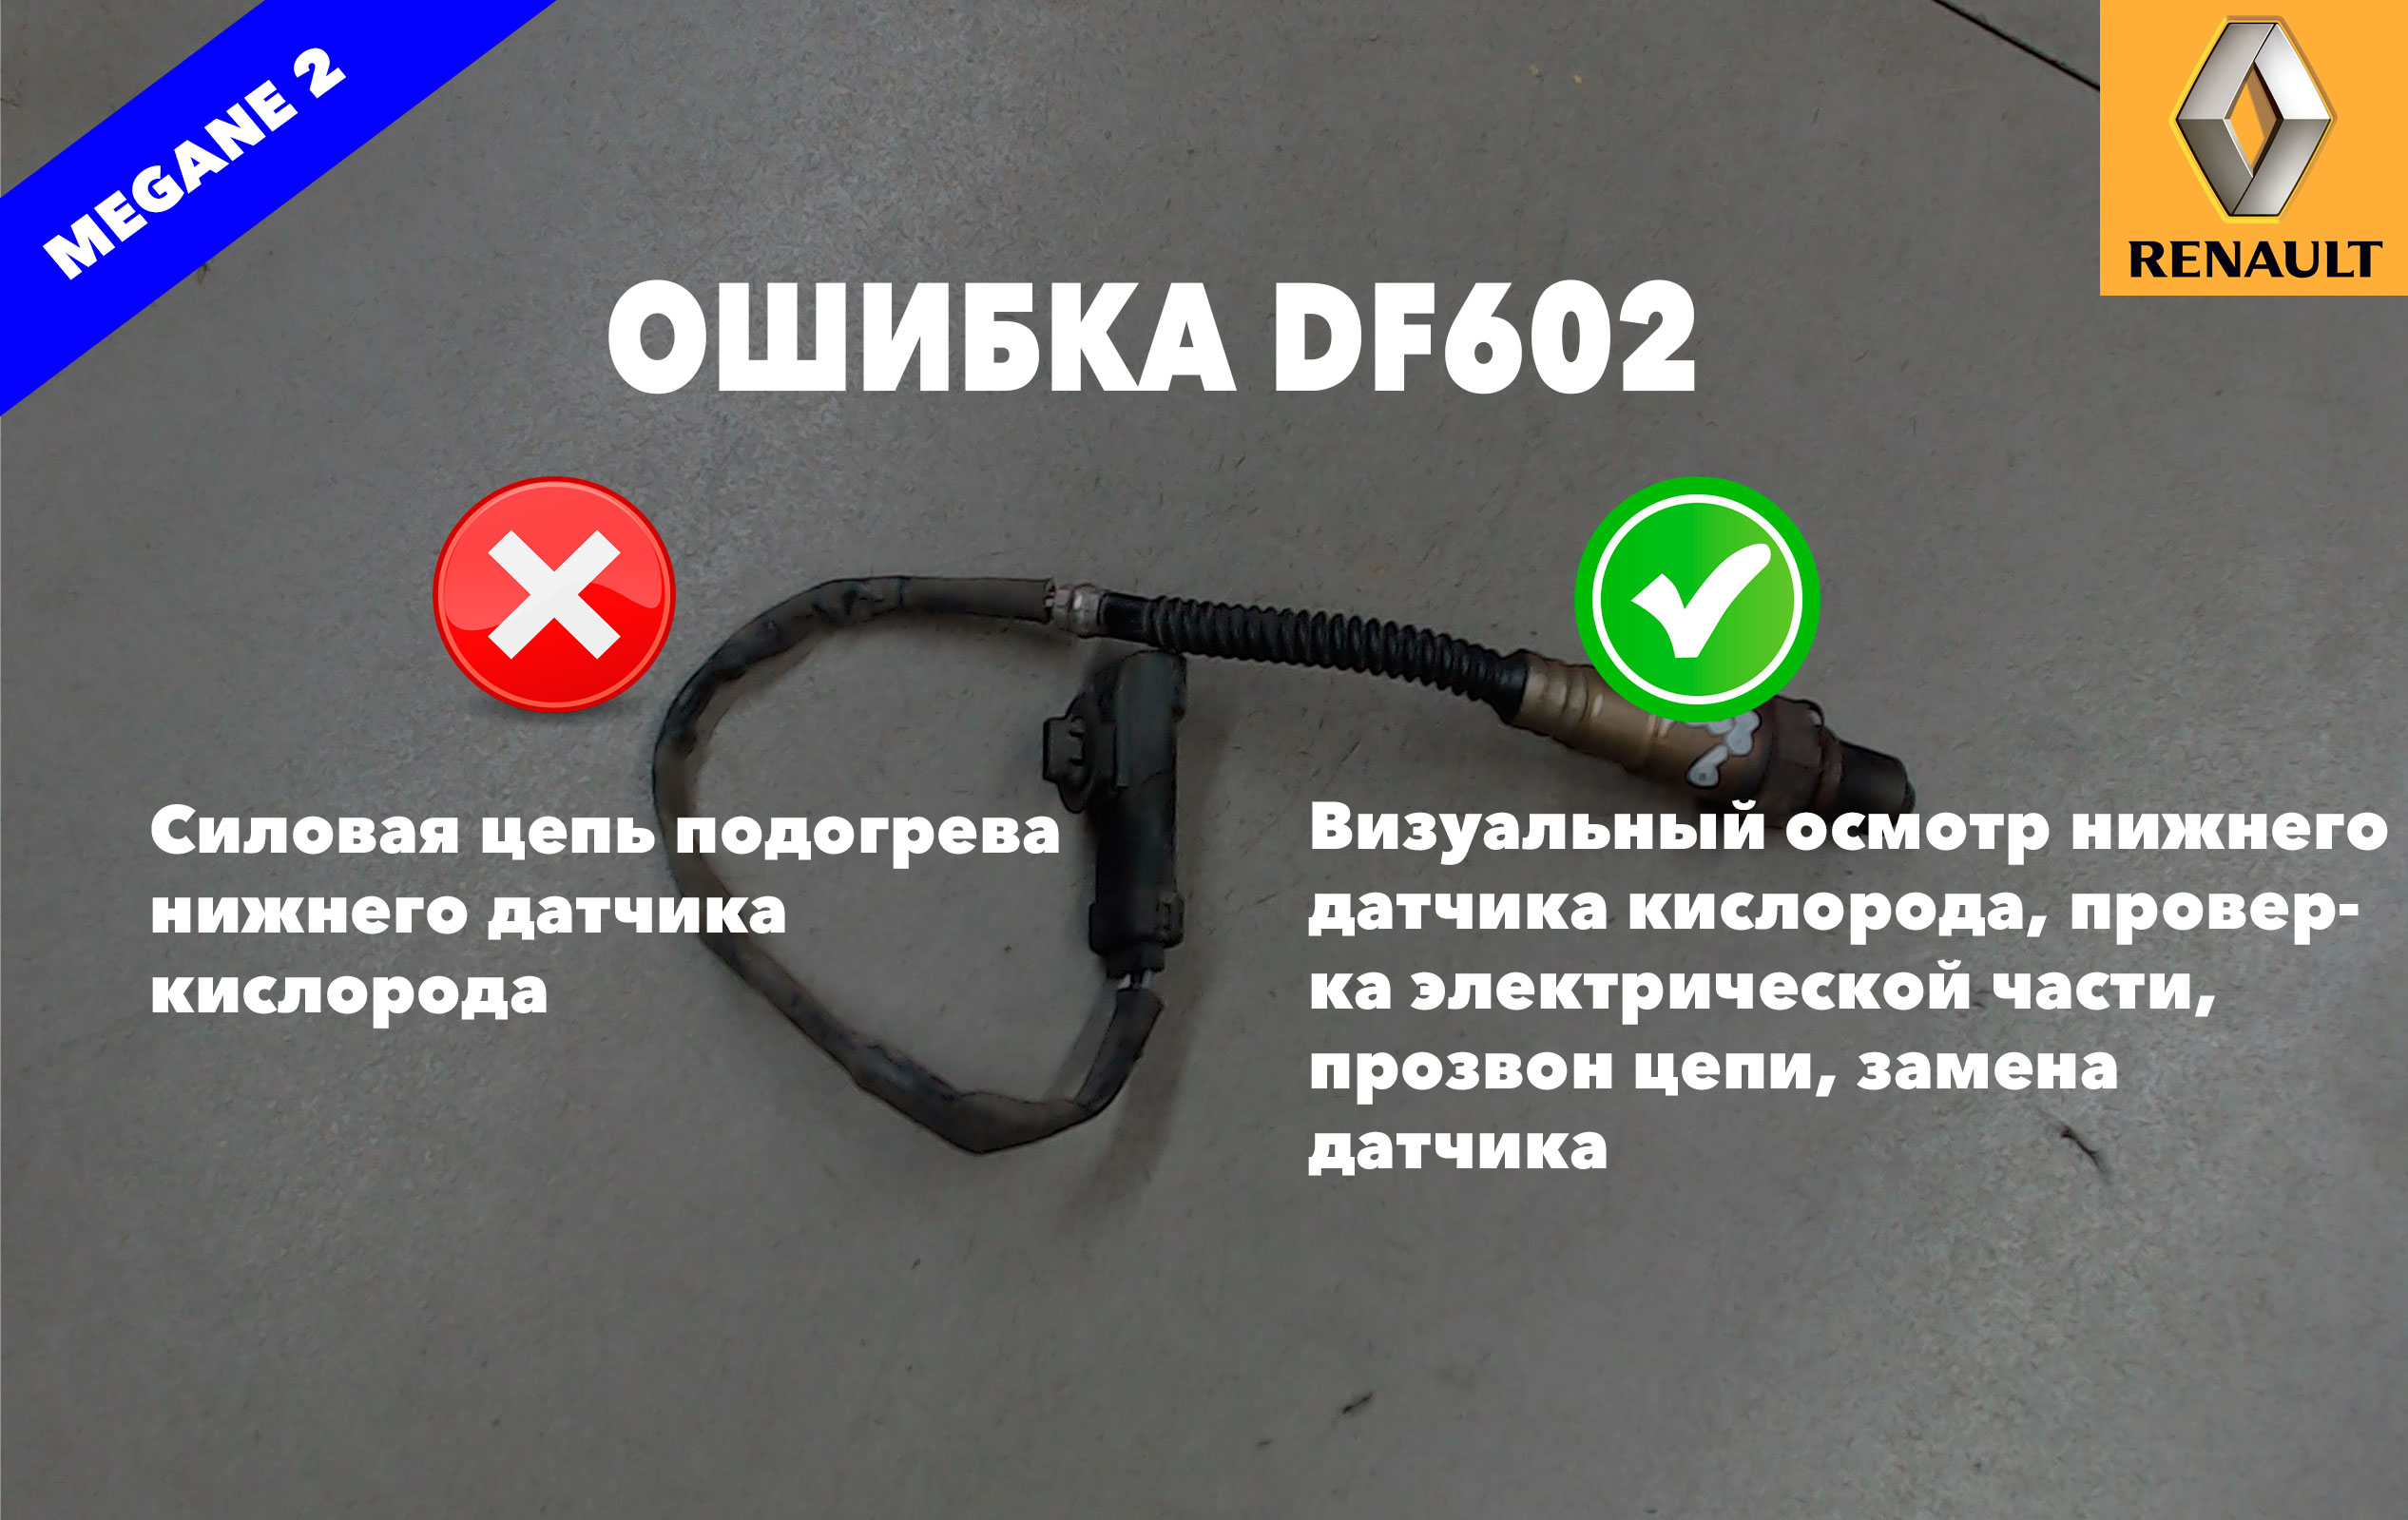 Рено Меган 2 код ошибки DF602 – силовая цепь подогрева нижнего датчика кислорода